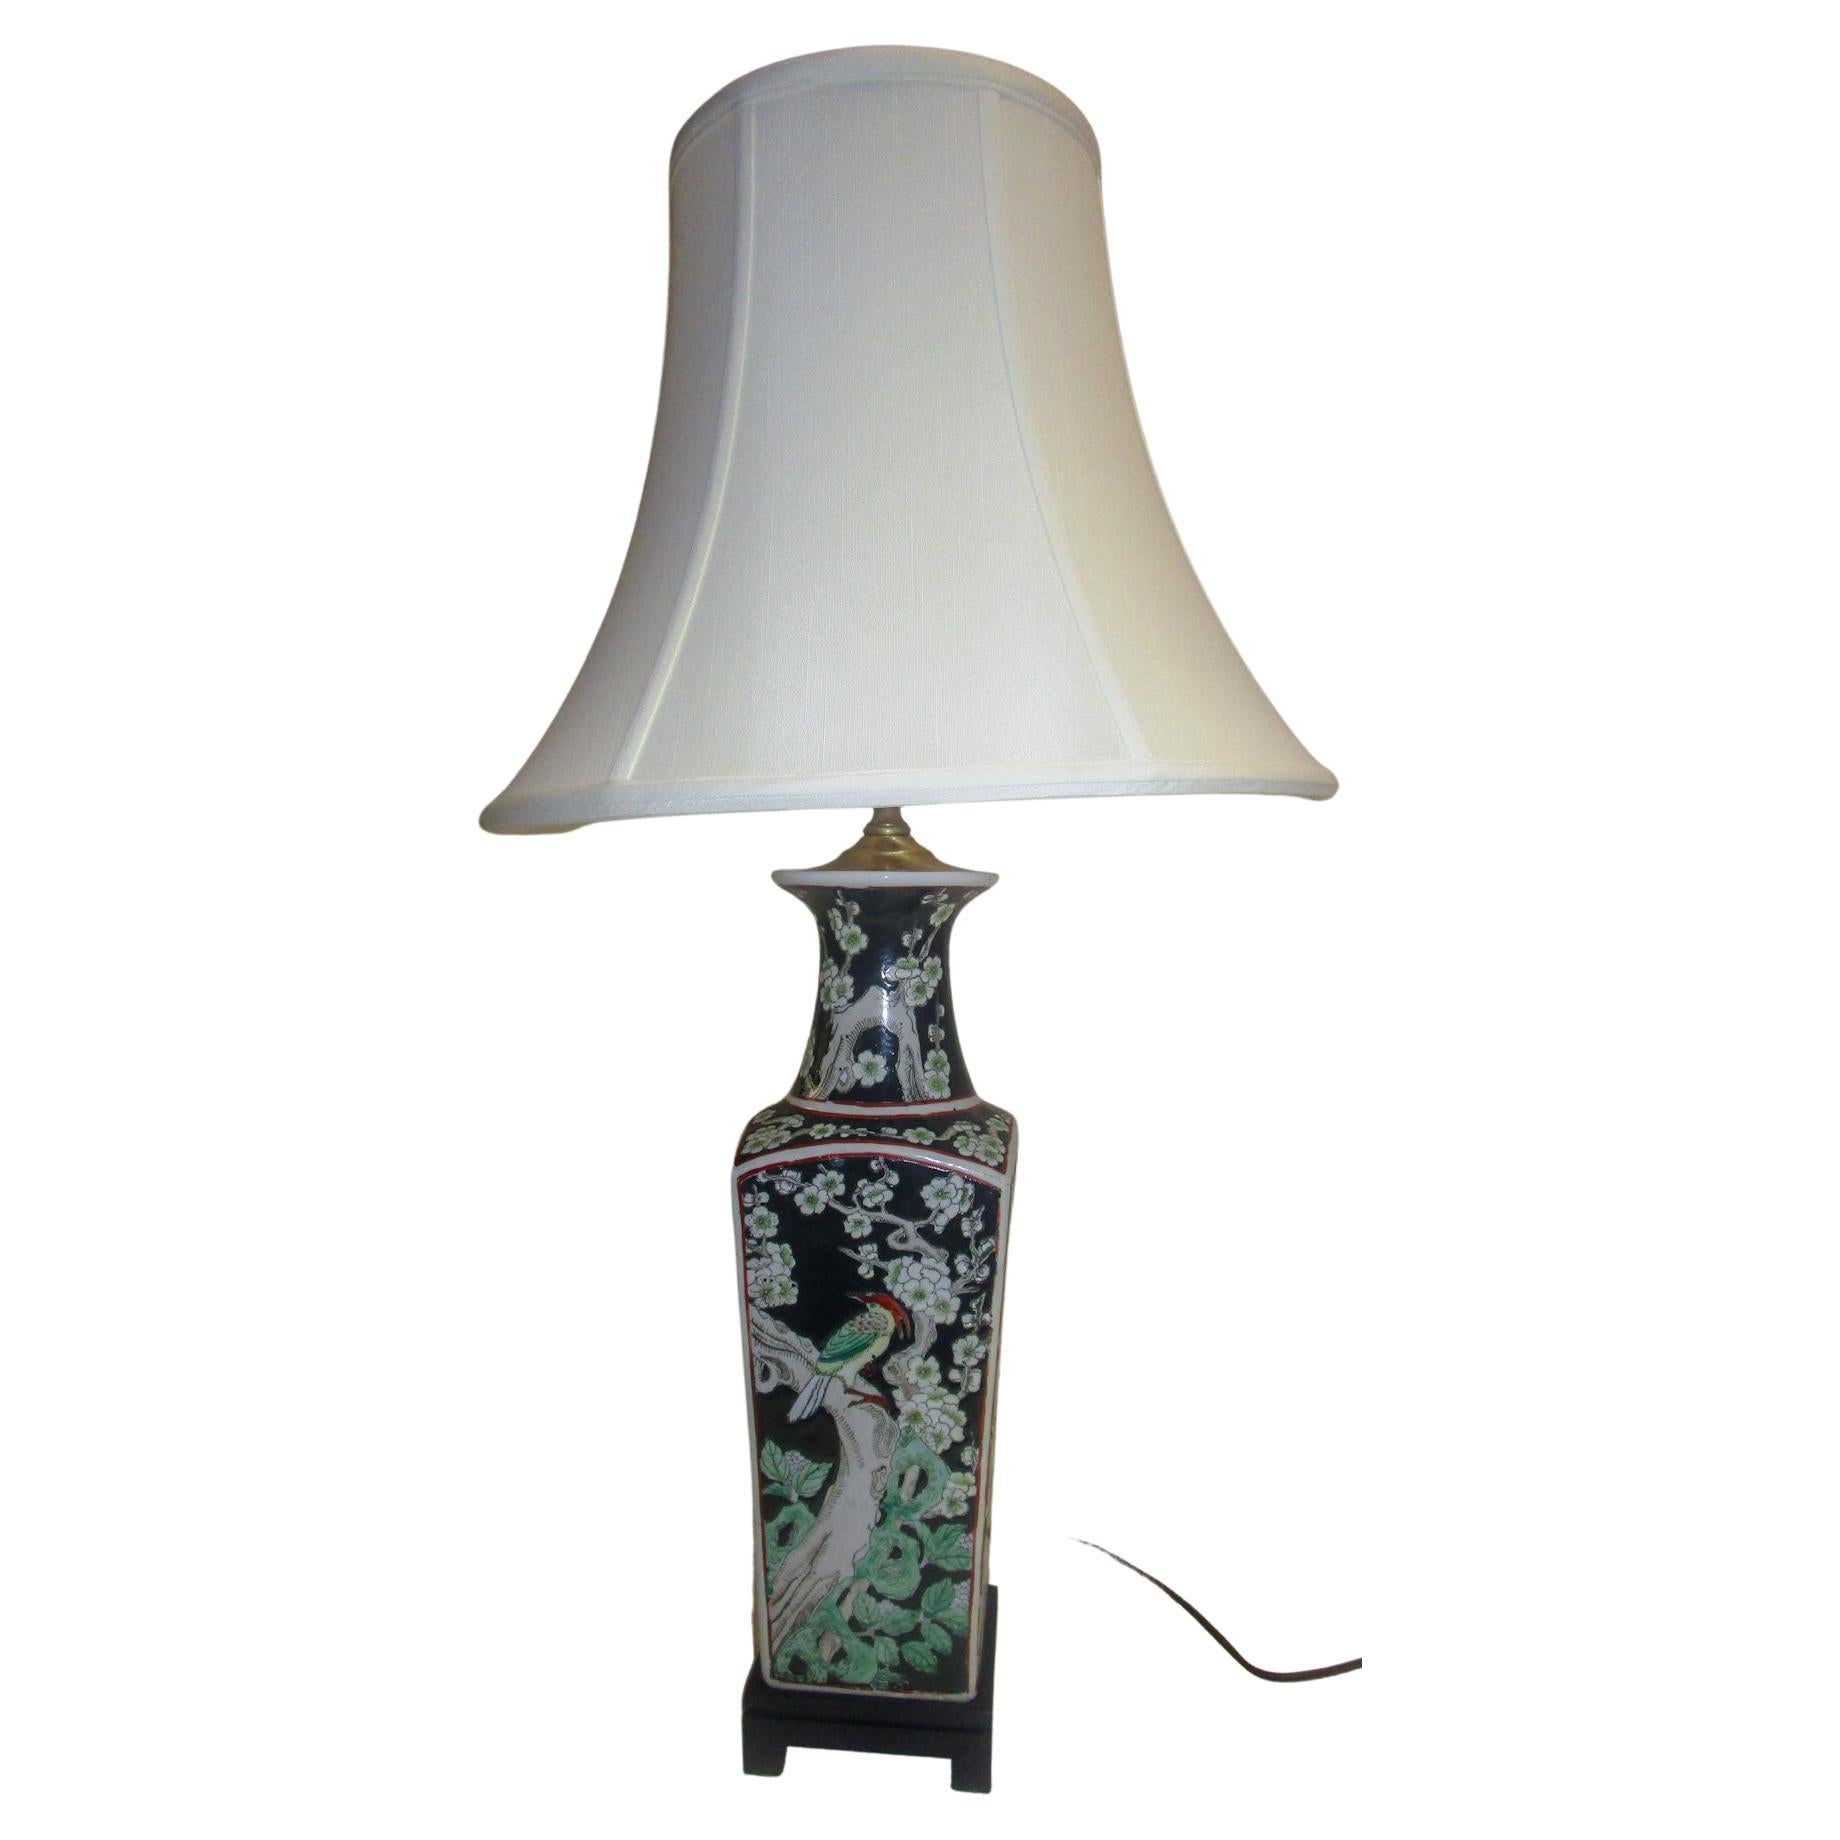 Lampe de table en céramique noire d'exportation chinoise avec motifs floraux et oiseaux